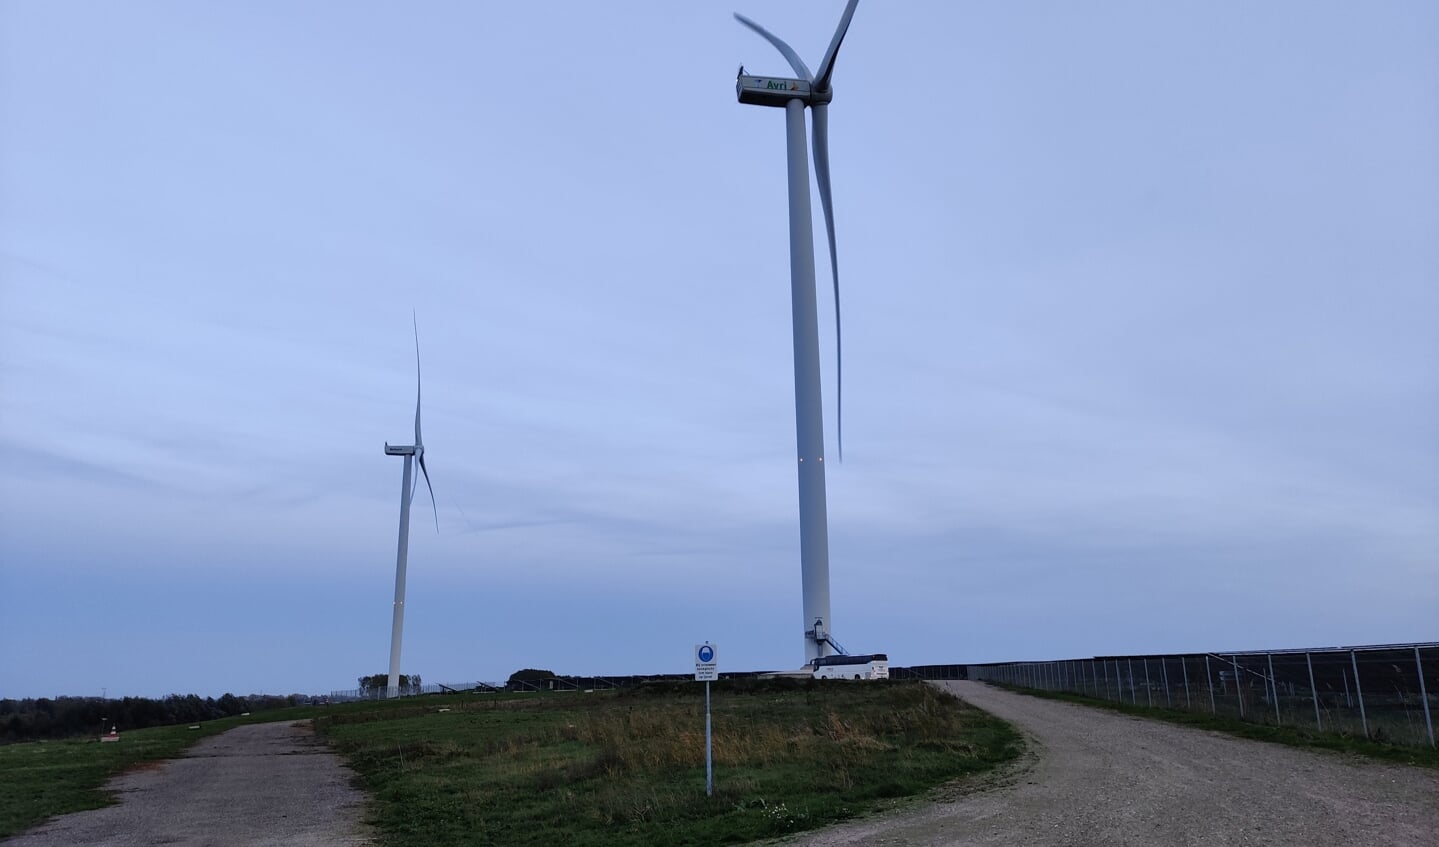 De tiphoogte van de windturbine - bij de bus - waar de uitleg wordt gegeven is 185 meter.